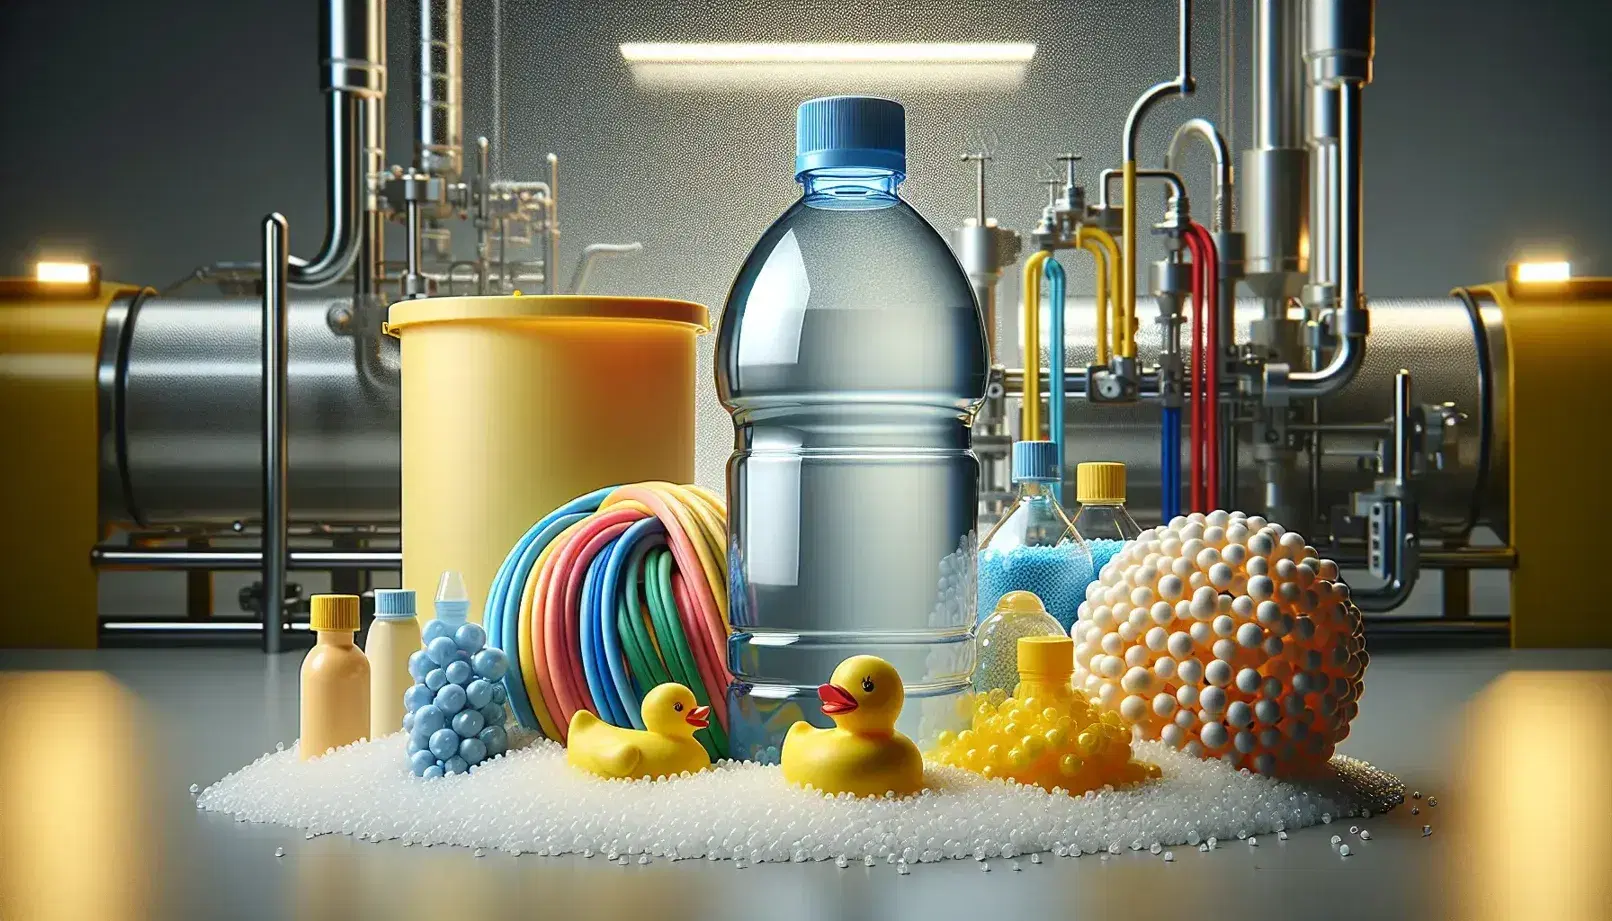 Vari oggetti in plastica su sfondo neutro: bottiglia trasparente con tappo blu, contenitore giallo, giocattoli e granuli polietilene, in ambiente produttivo.